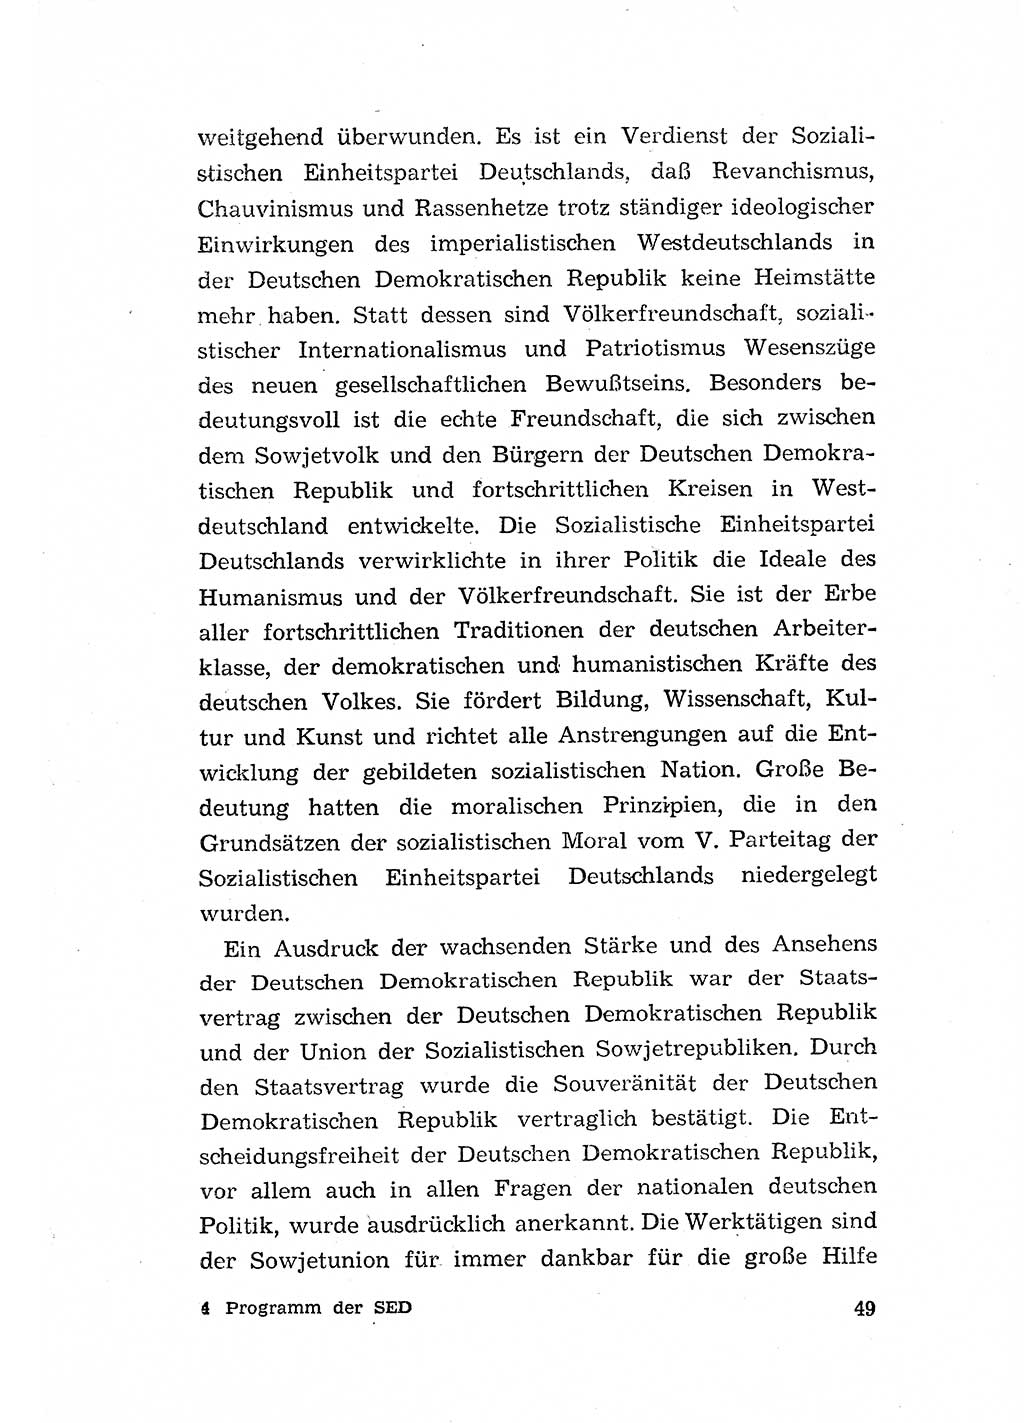 Programm der Sozialistischen Einheitspartei Deutschlands (SED) [Deutsche Demokratische Republik (DDR)] 1963, Seite 49 (Progr. SED DDR 1963, S. 49)